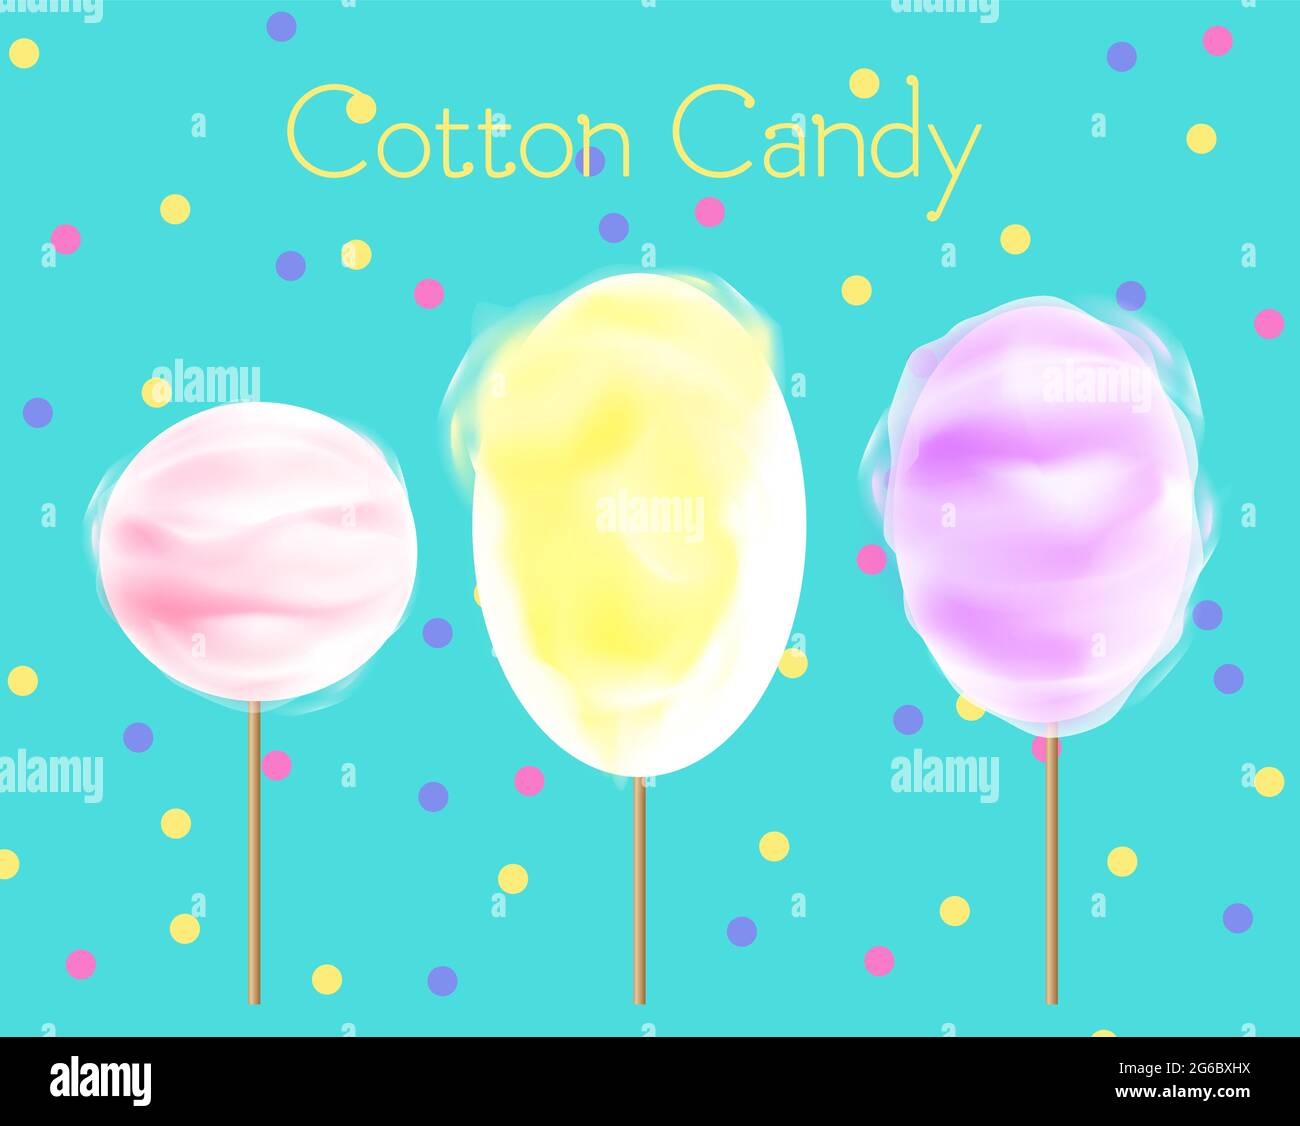 Vektor-Illustration von drei Zuckerwatte verschiedenen Farben und Formen auf blauem Hintergrund mit Konfetti. Zuckerwatte in gelben, rosa und violetten Farben Stock Vektor